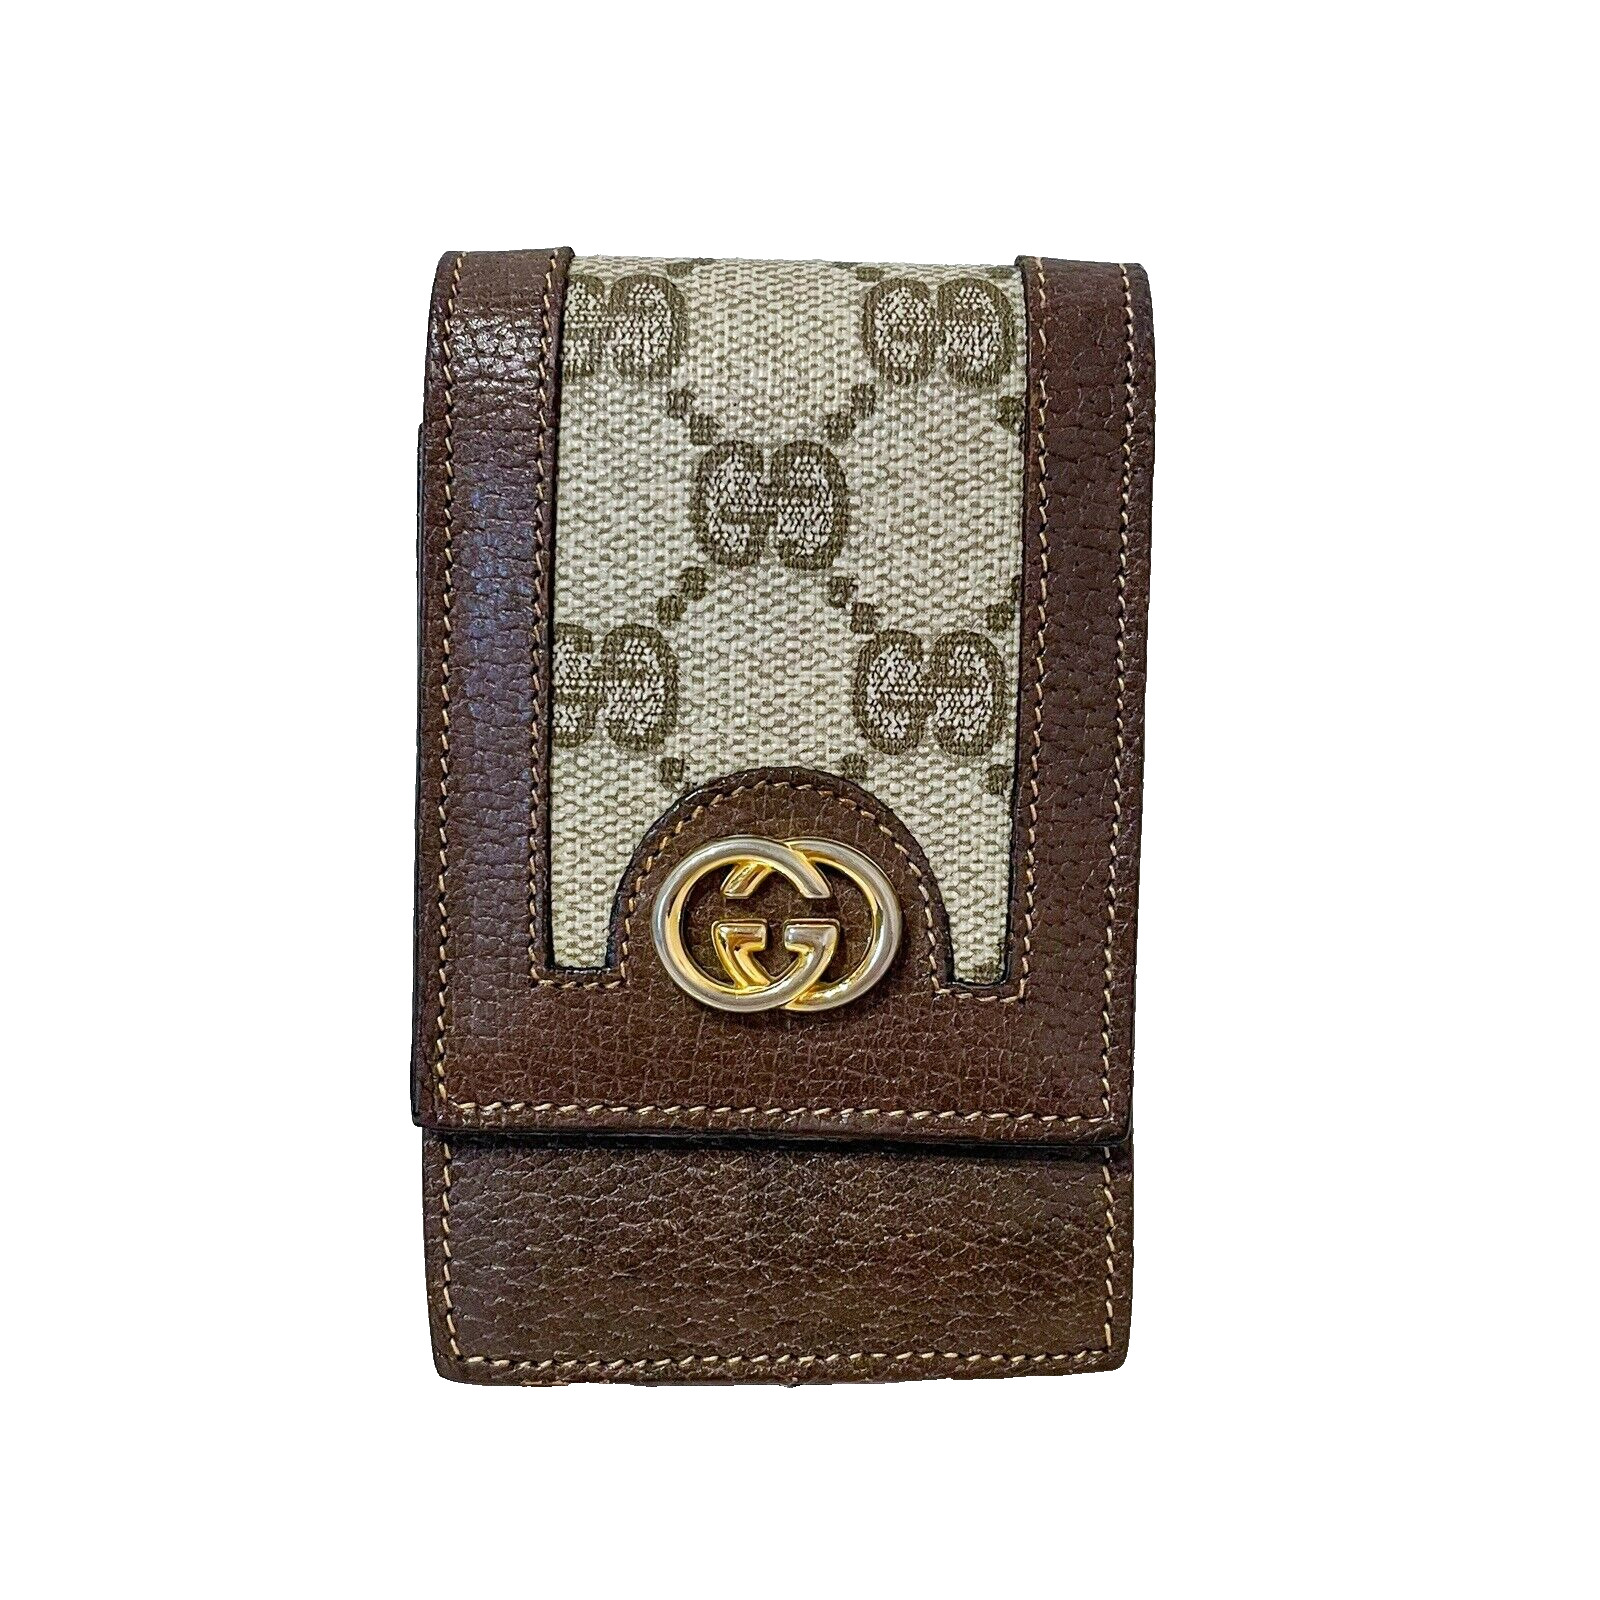 Vintage Gucci Cigarette Case GG Supreme Wallet Case Pouch Brown PVC Authentic